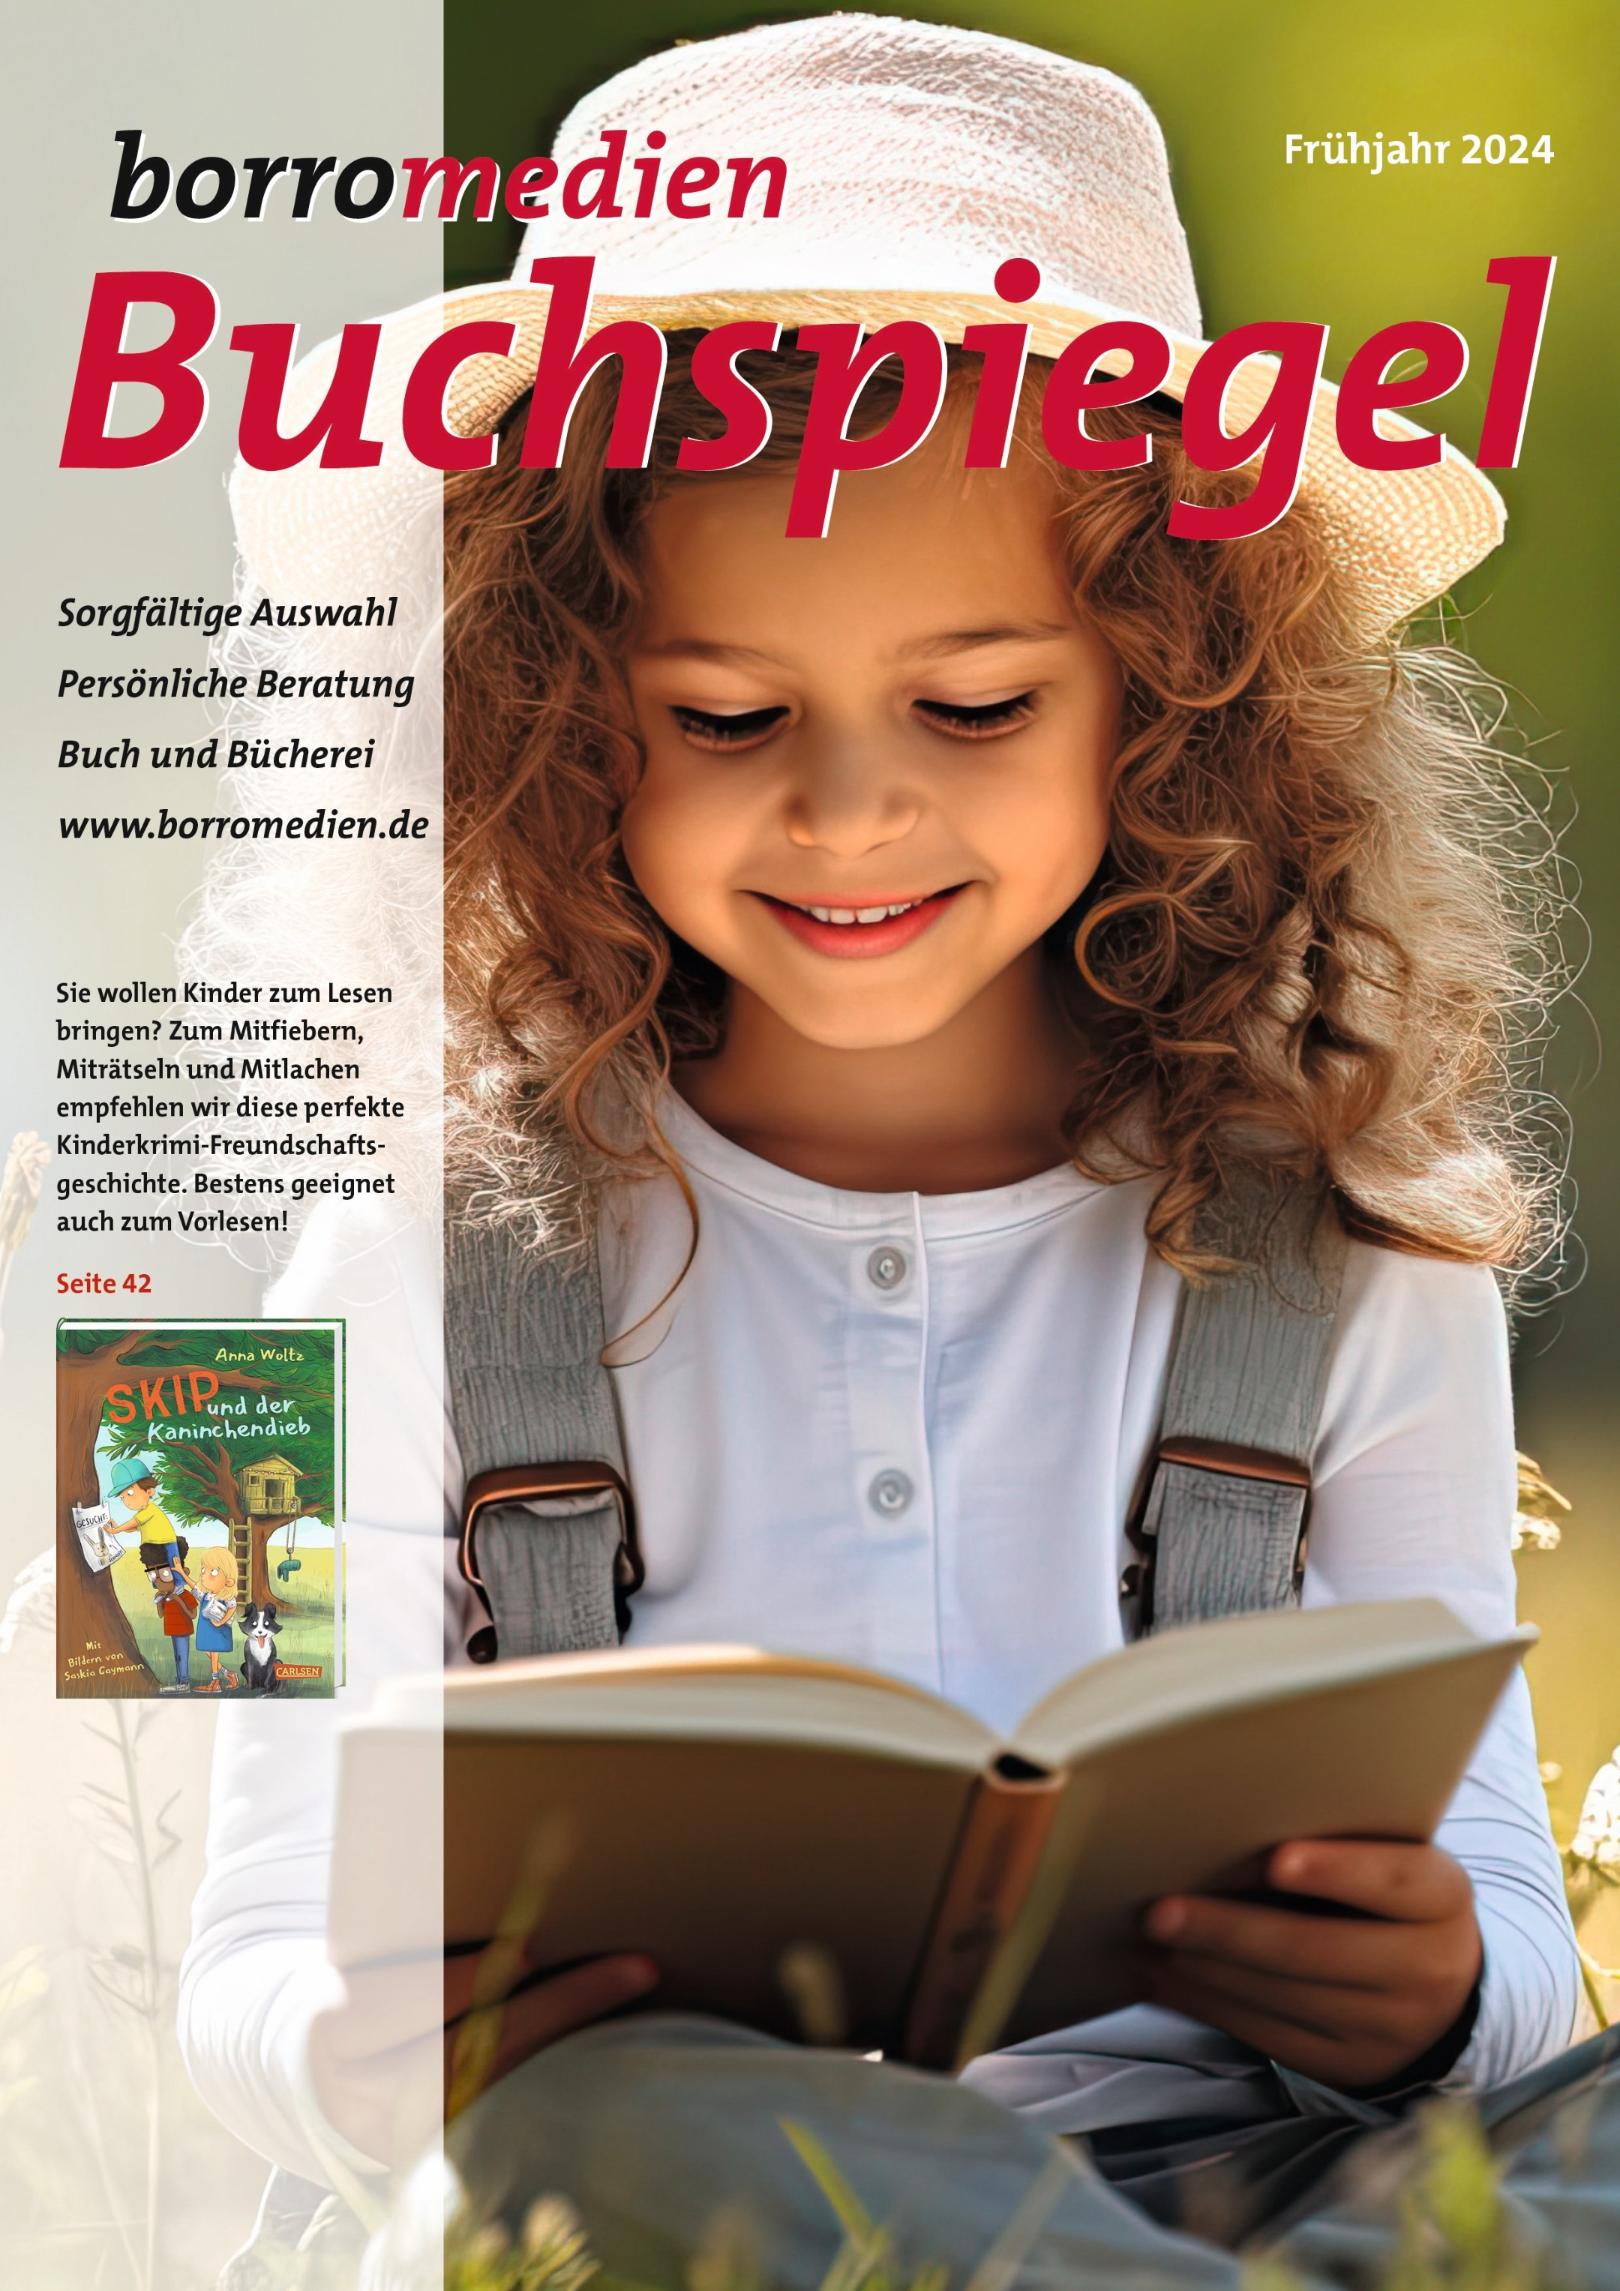 Bestellen und die Bücherei unterstützen (c) borromedien GmbH